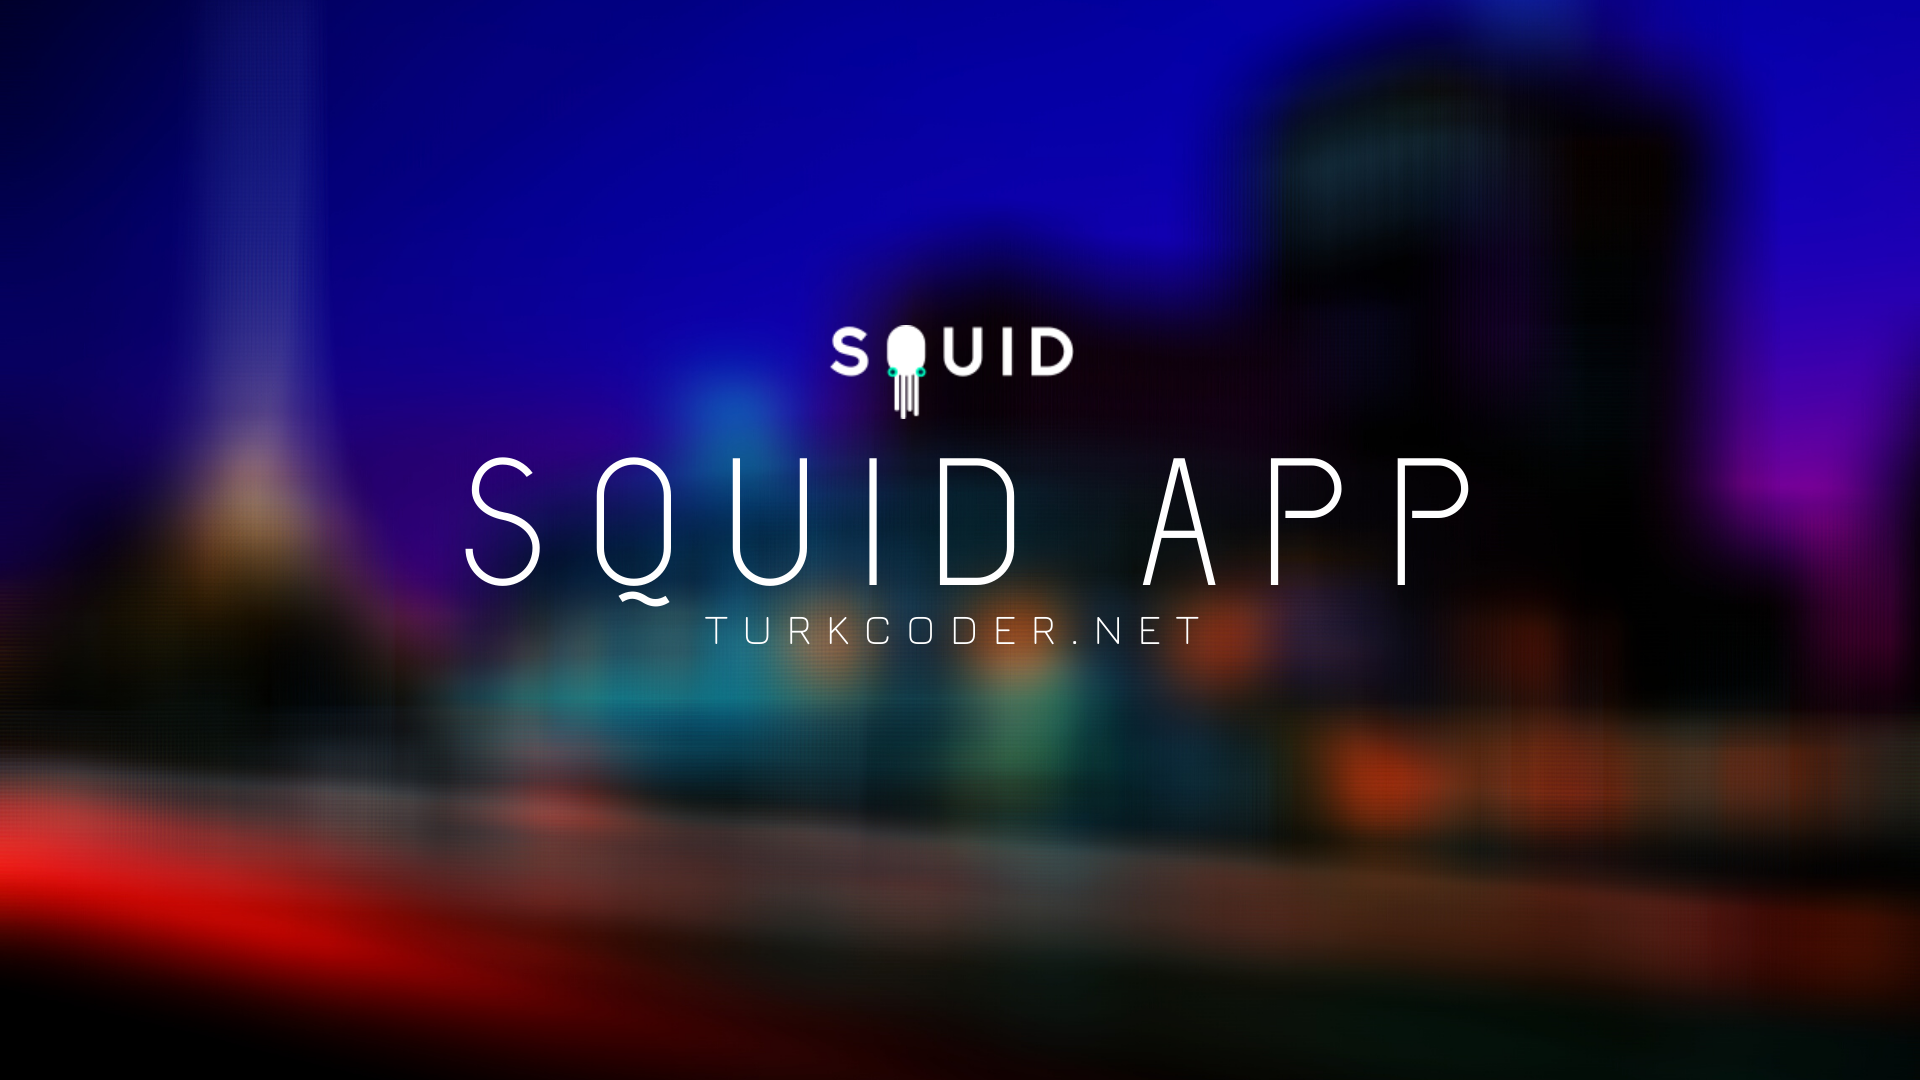 Turkcoder.net Artık SQUID APP üzerinde de sizlerle.